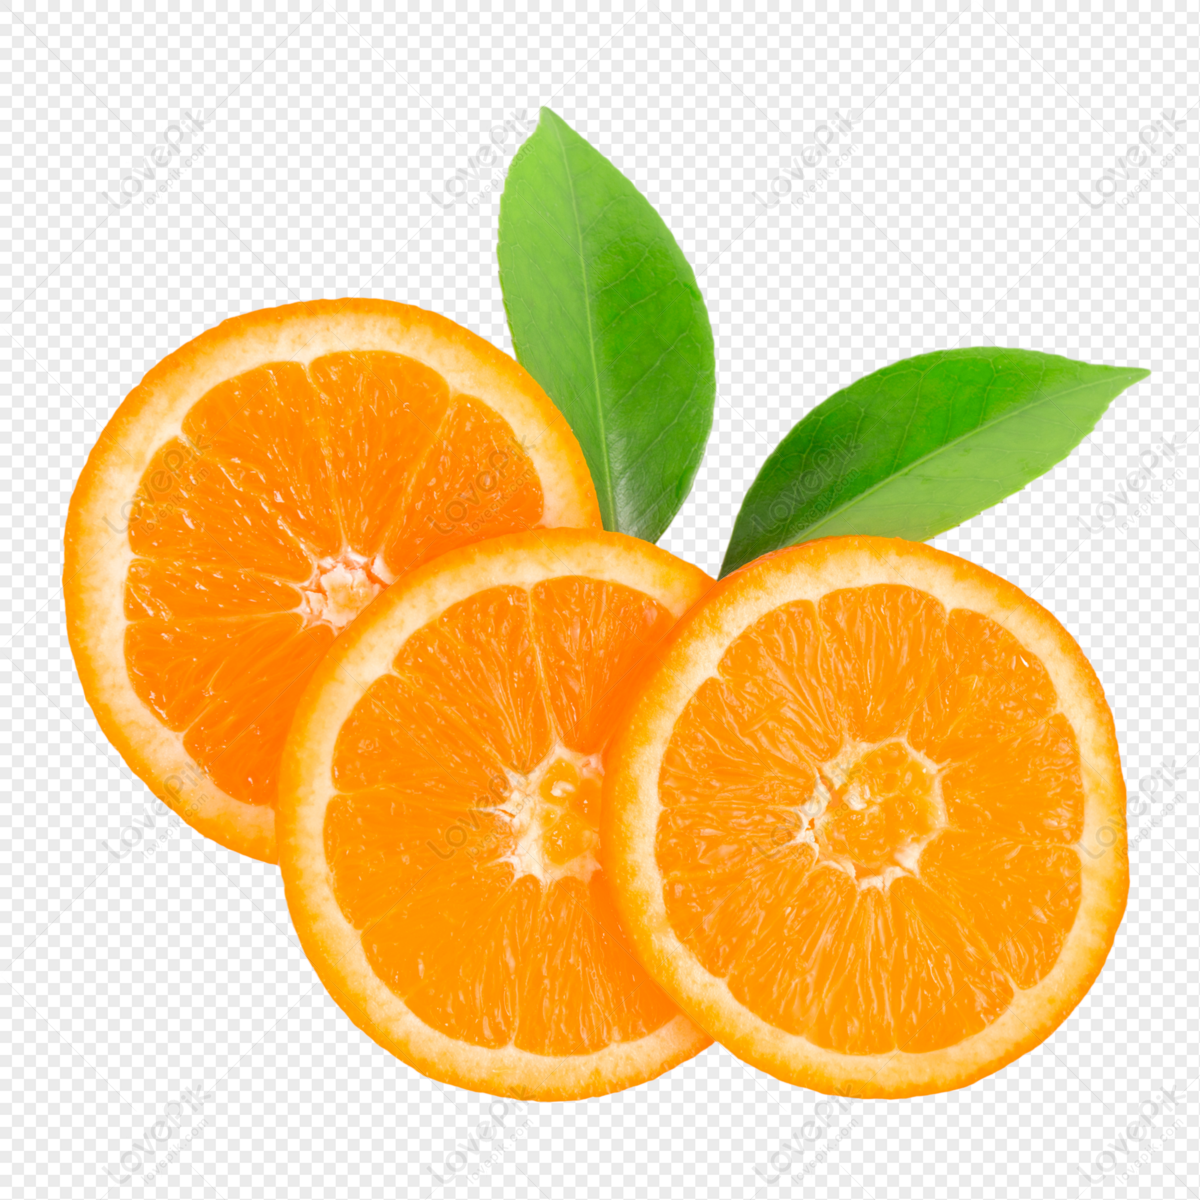 https://img.lovepik.com/free-png/20210928/lovepik-cut-orange-slices-png-image_401625064_wh1200.png